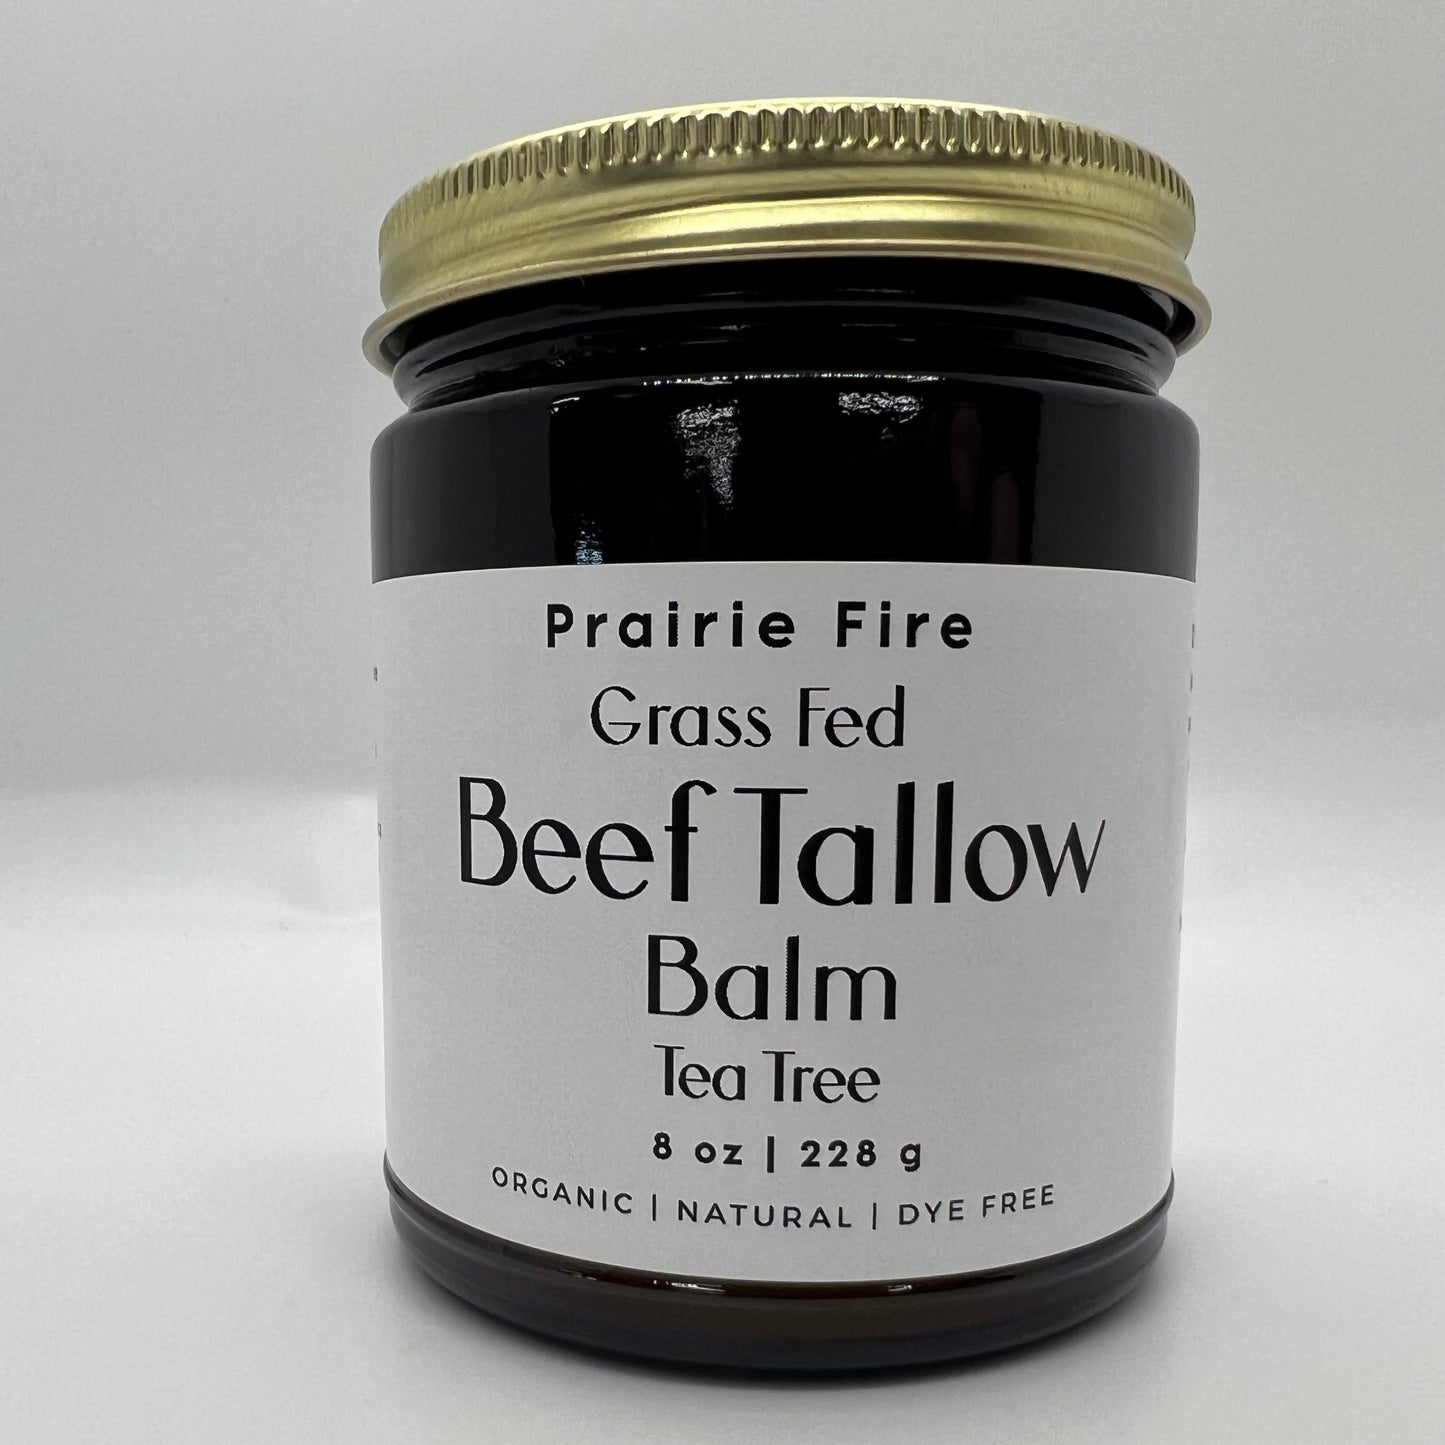 Beef Tallow Balm - 8 oz - Organic Grass Fed - Body Butter - Prairie Fire Kansas Native Pasture